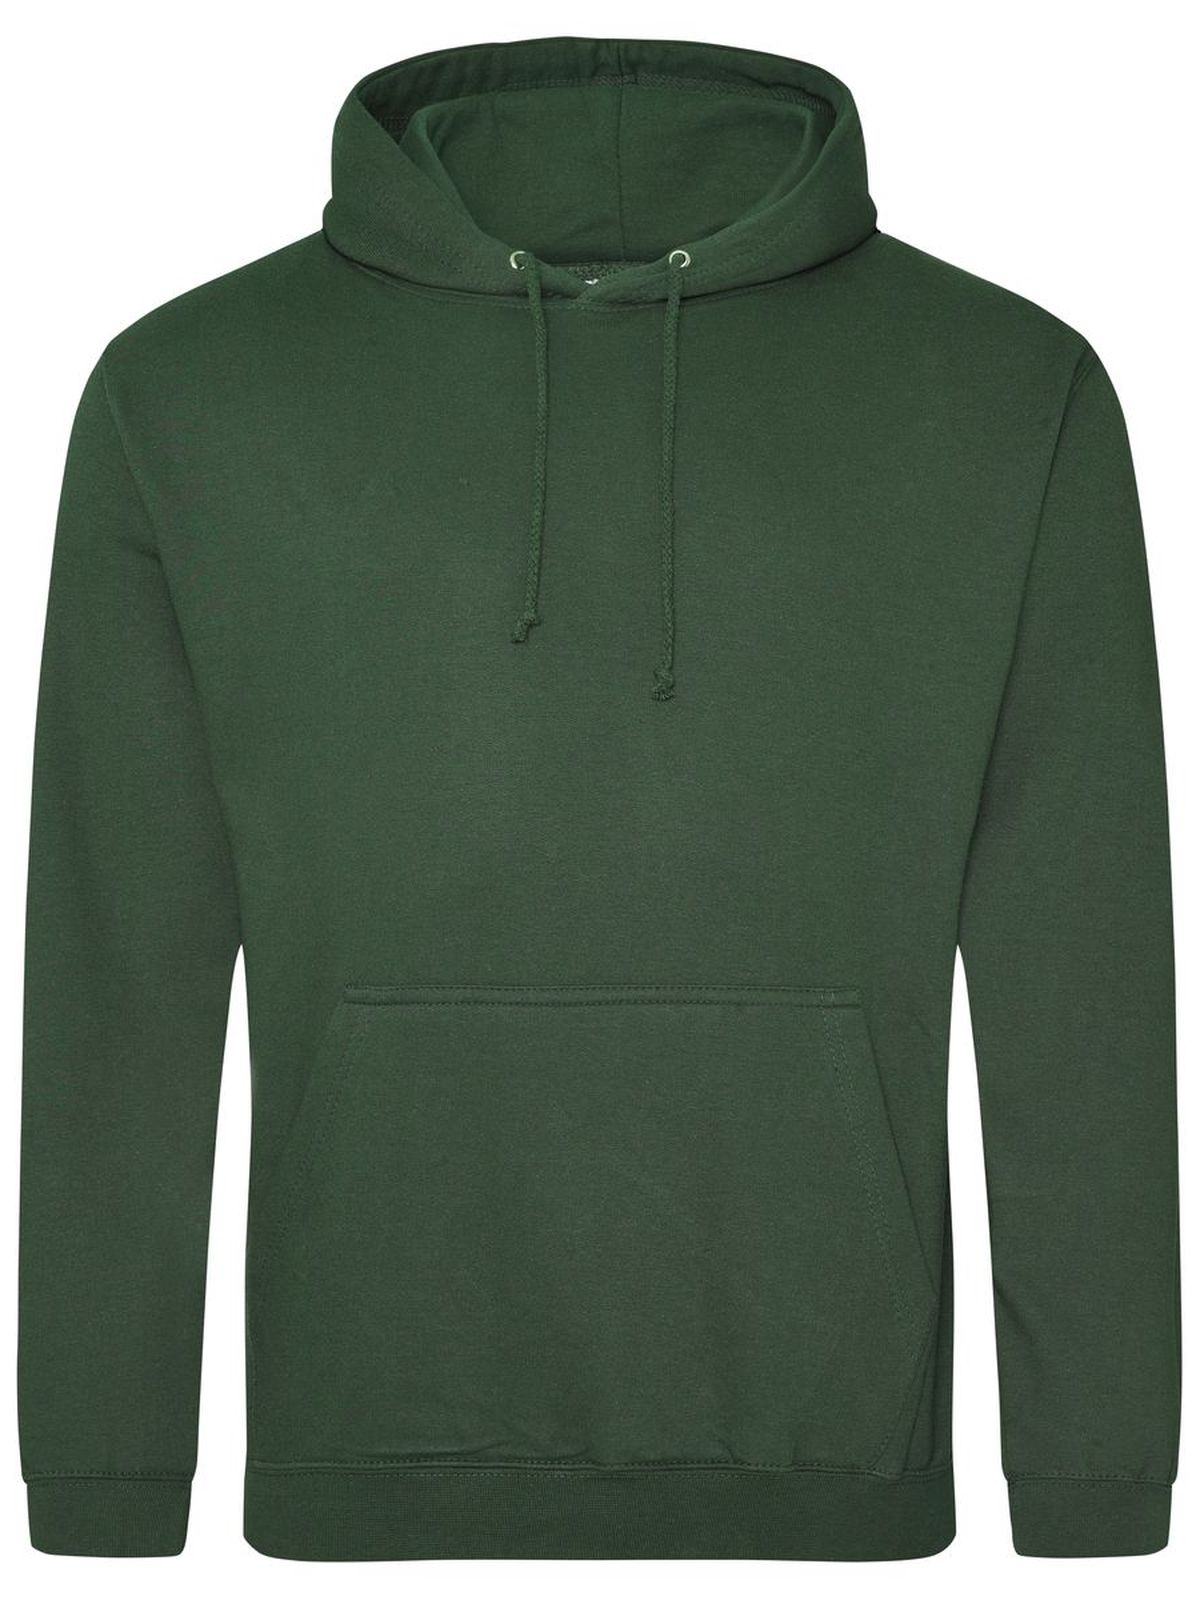 college-hoodie-bottle-green.webp